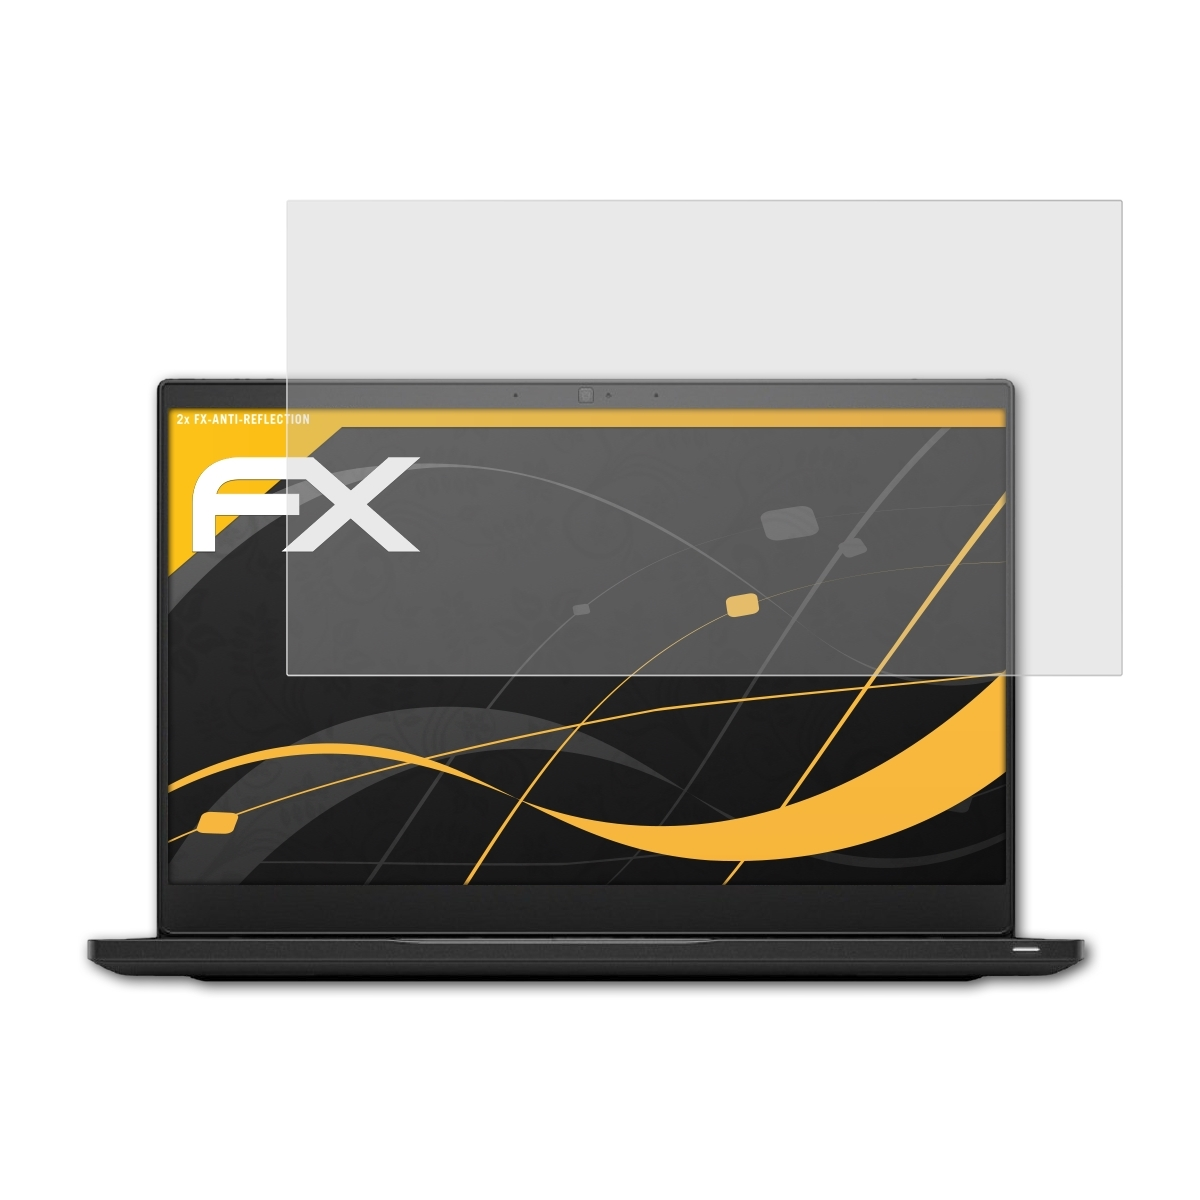 Dell FX-Antireflex ATFOLIX 7390) Latitude 2x Displayschutz(für